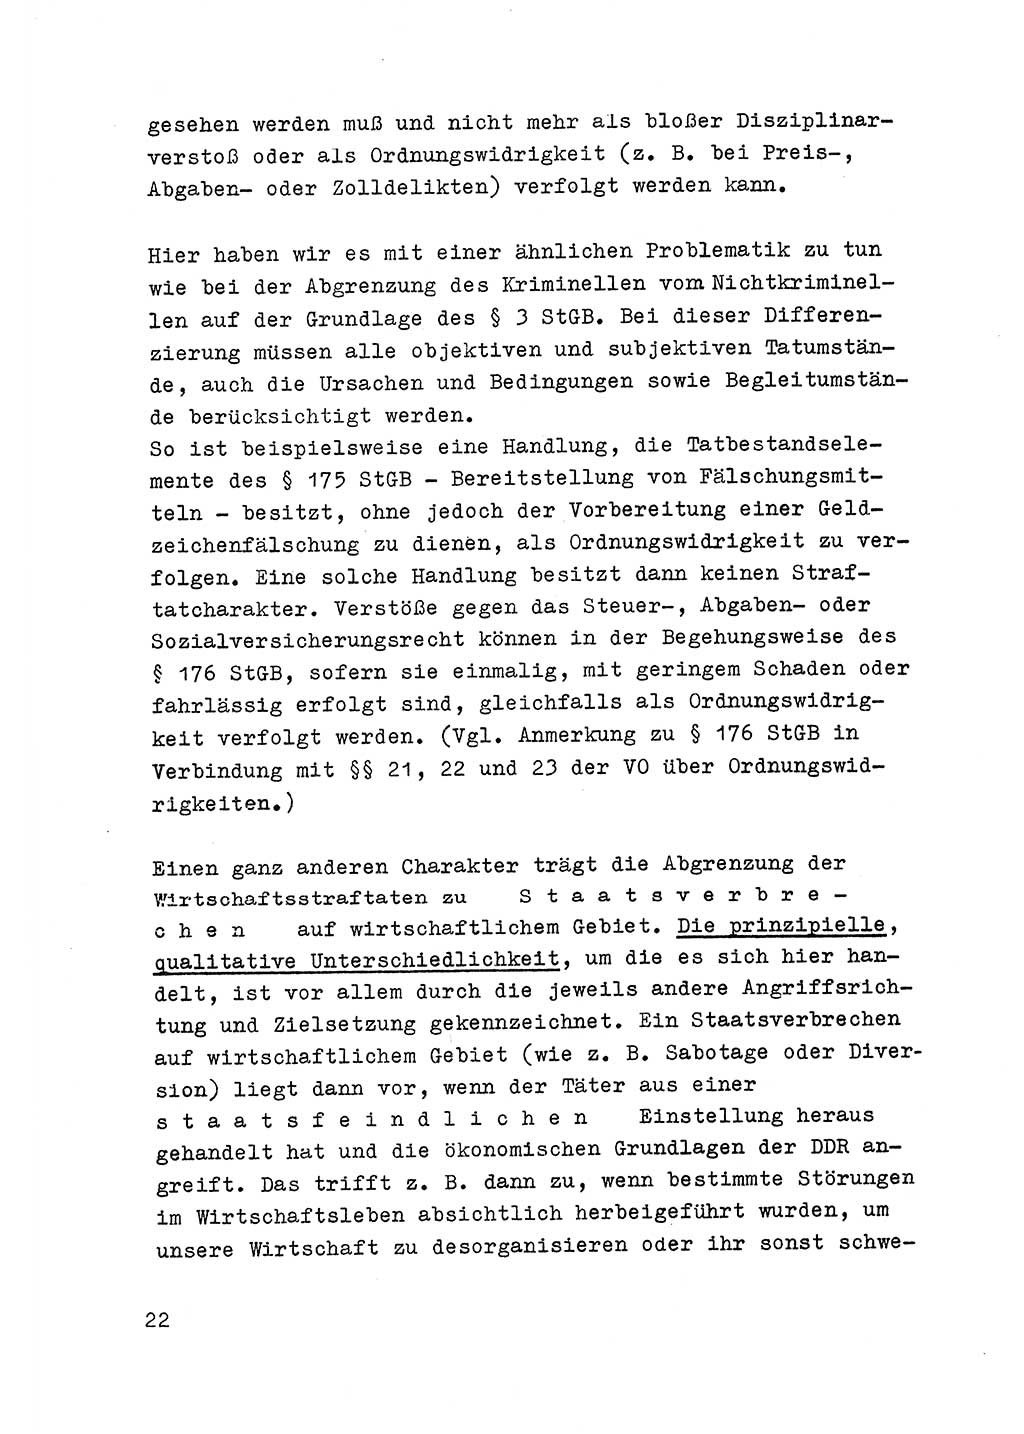 Strafrecht der DDR (Deutsche Demokratische Republik), Besonderer Teil, Lehrmaterial, Heft 6 1970, Seite 22 (Strafr. DDR BT Lehrmat. H. 6 1970, S. 22)